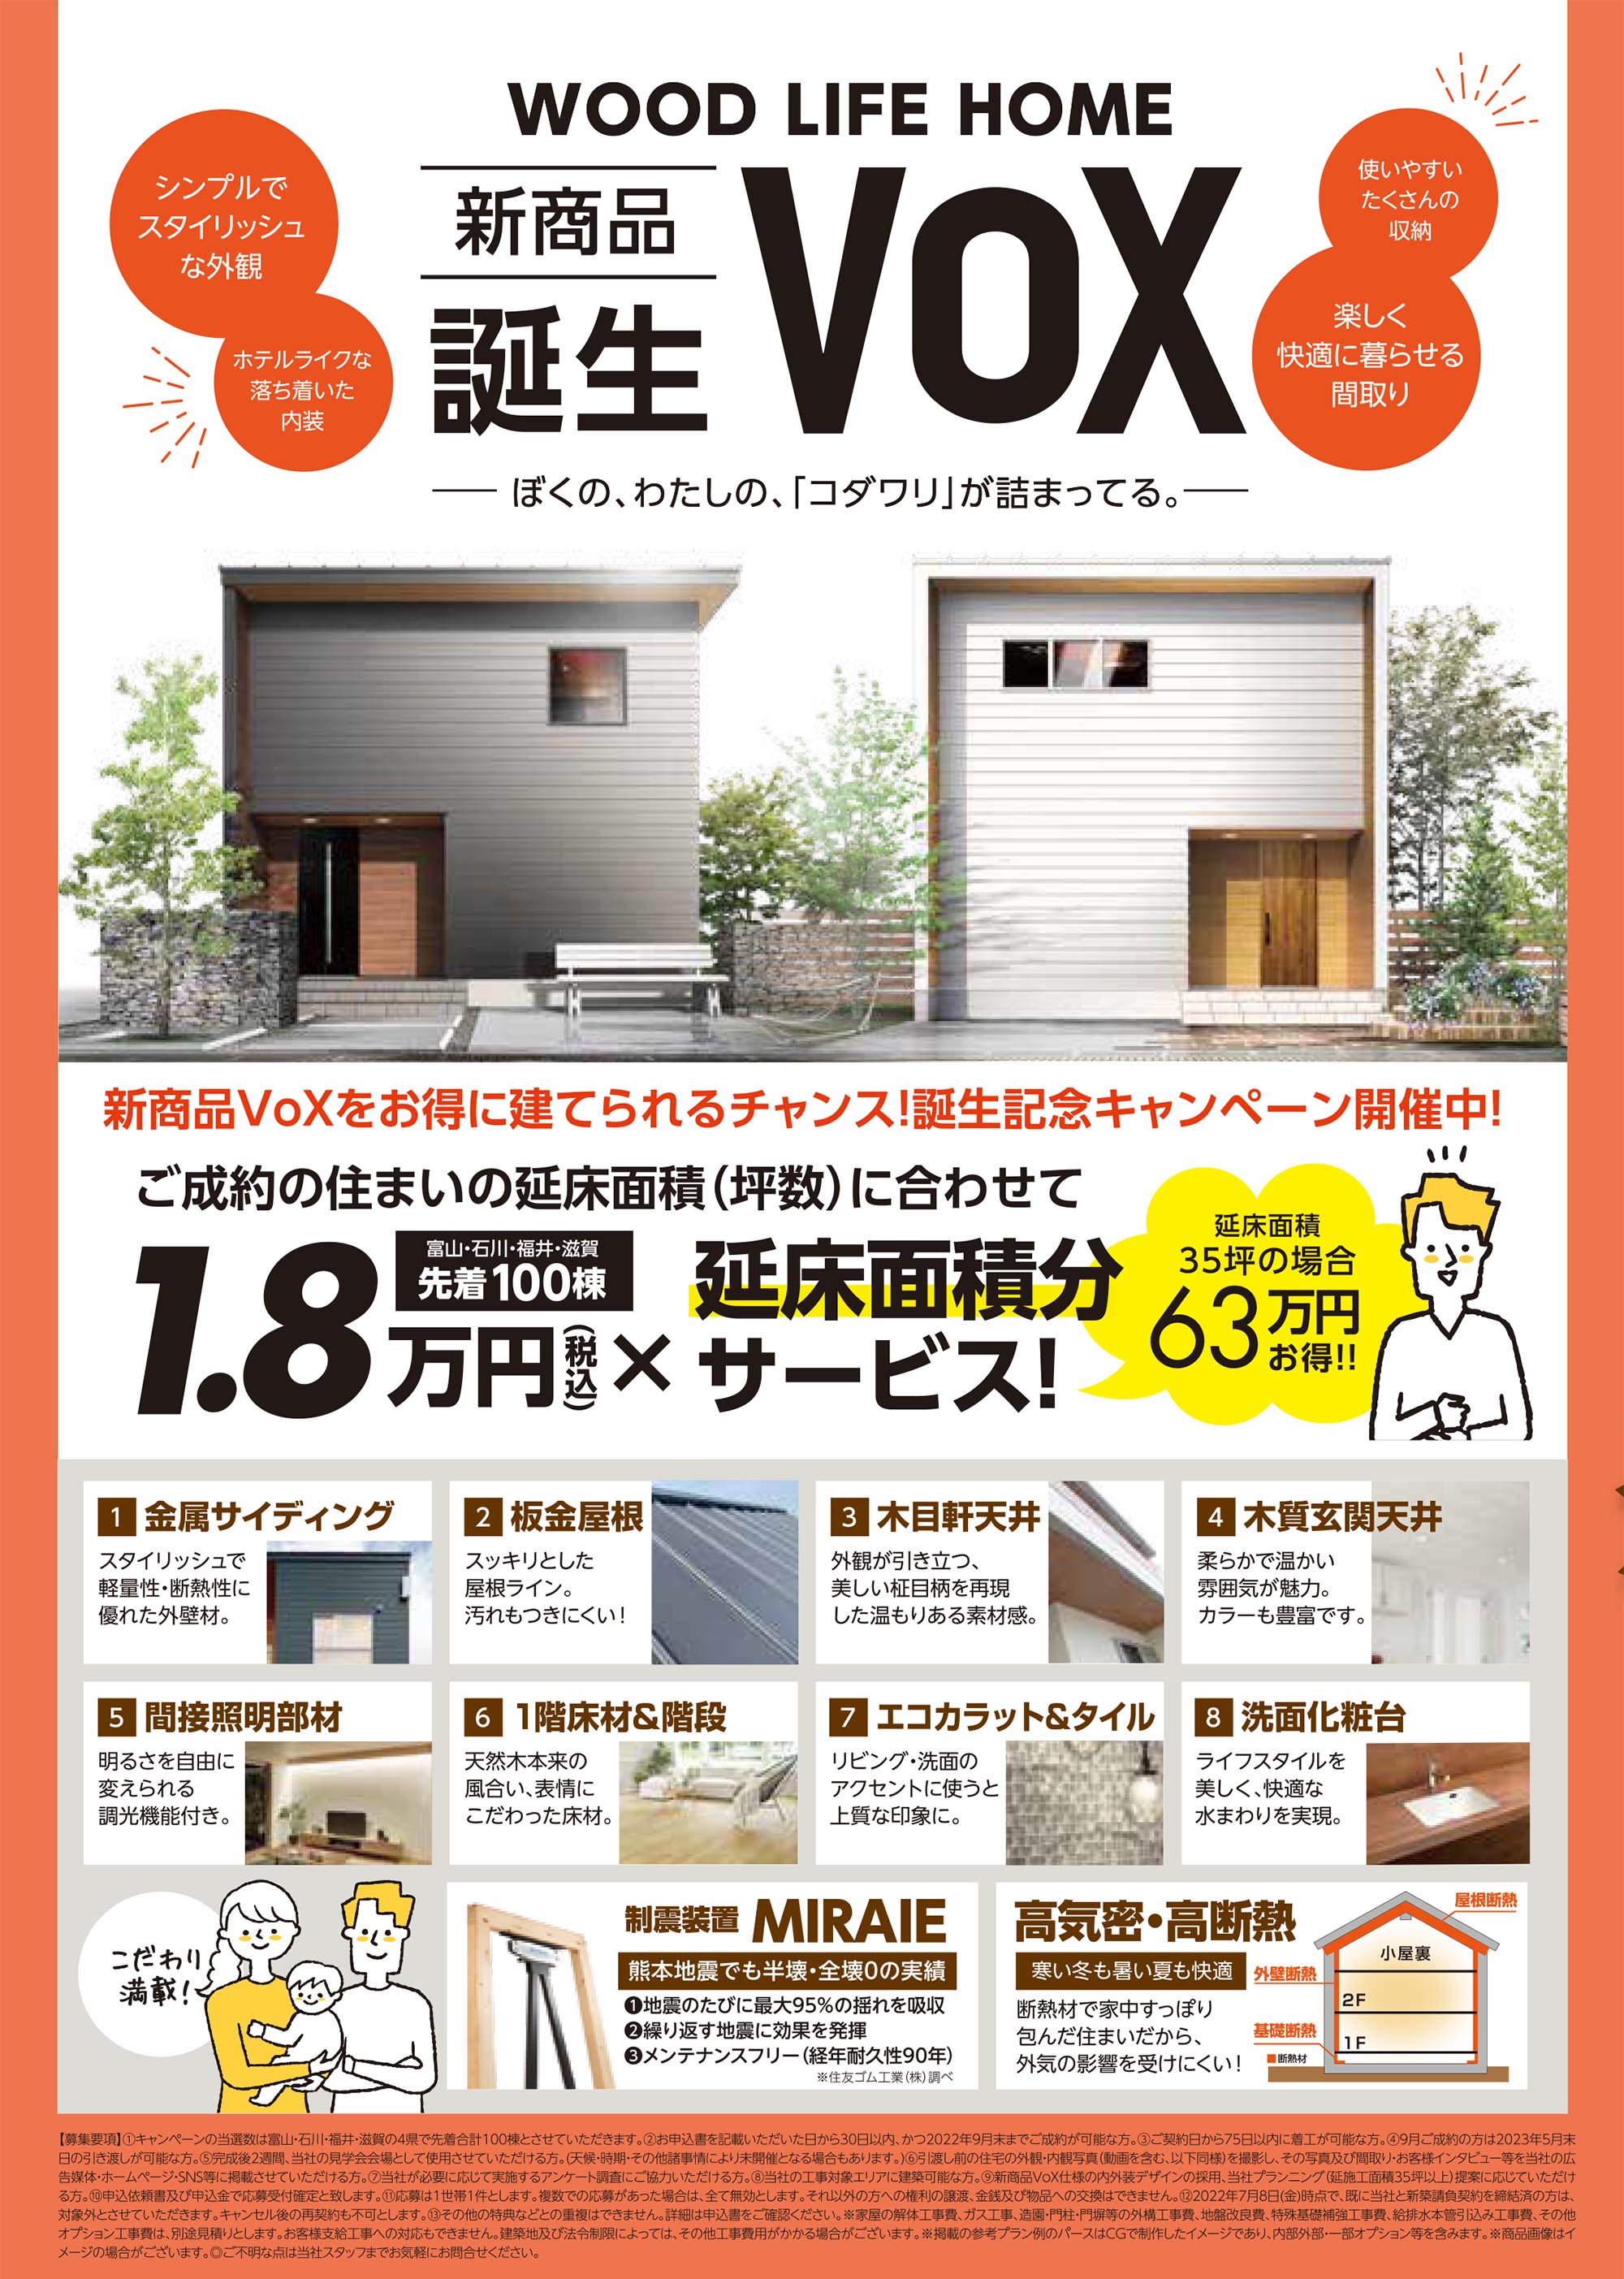 新商品VoX誕生